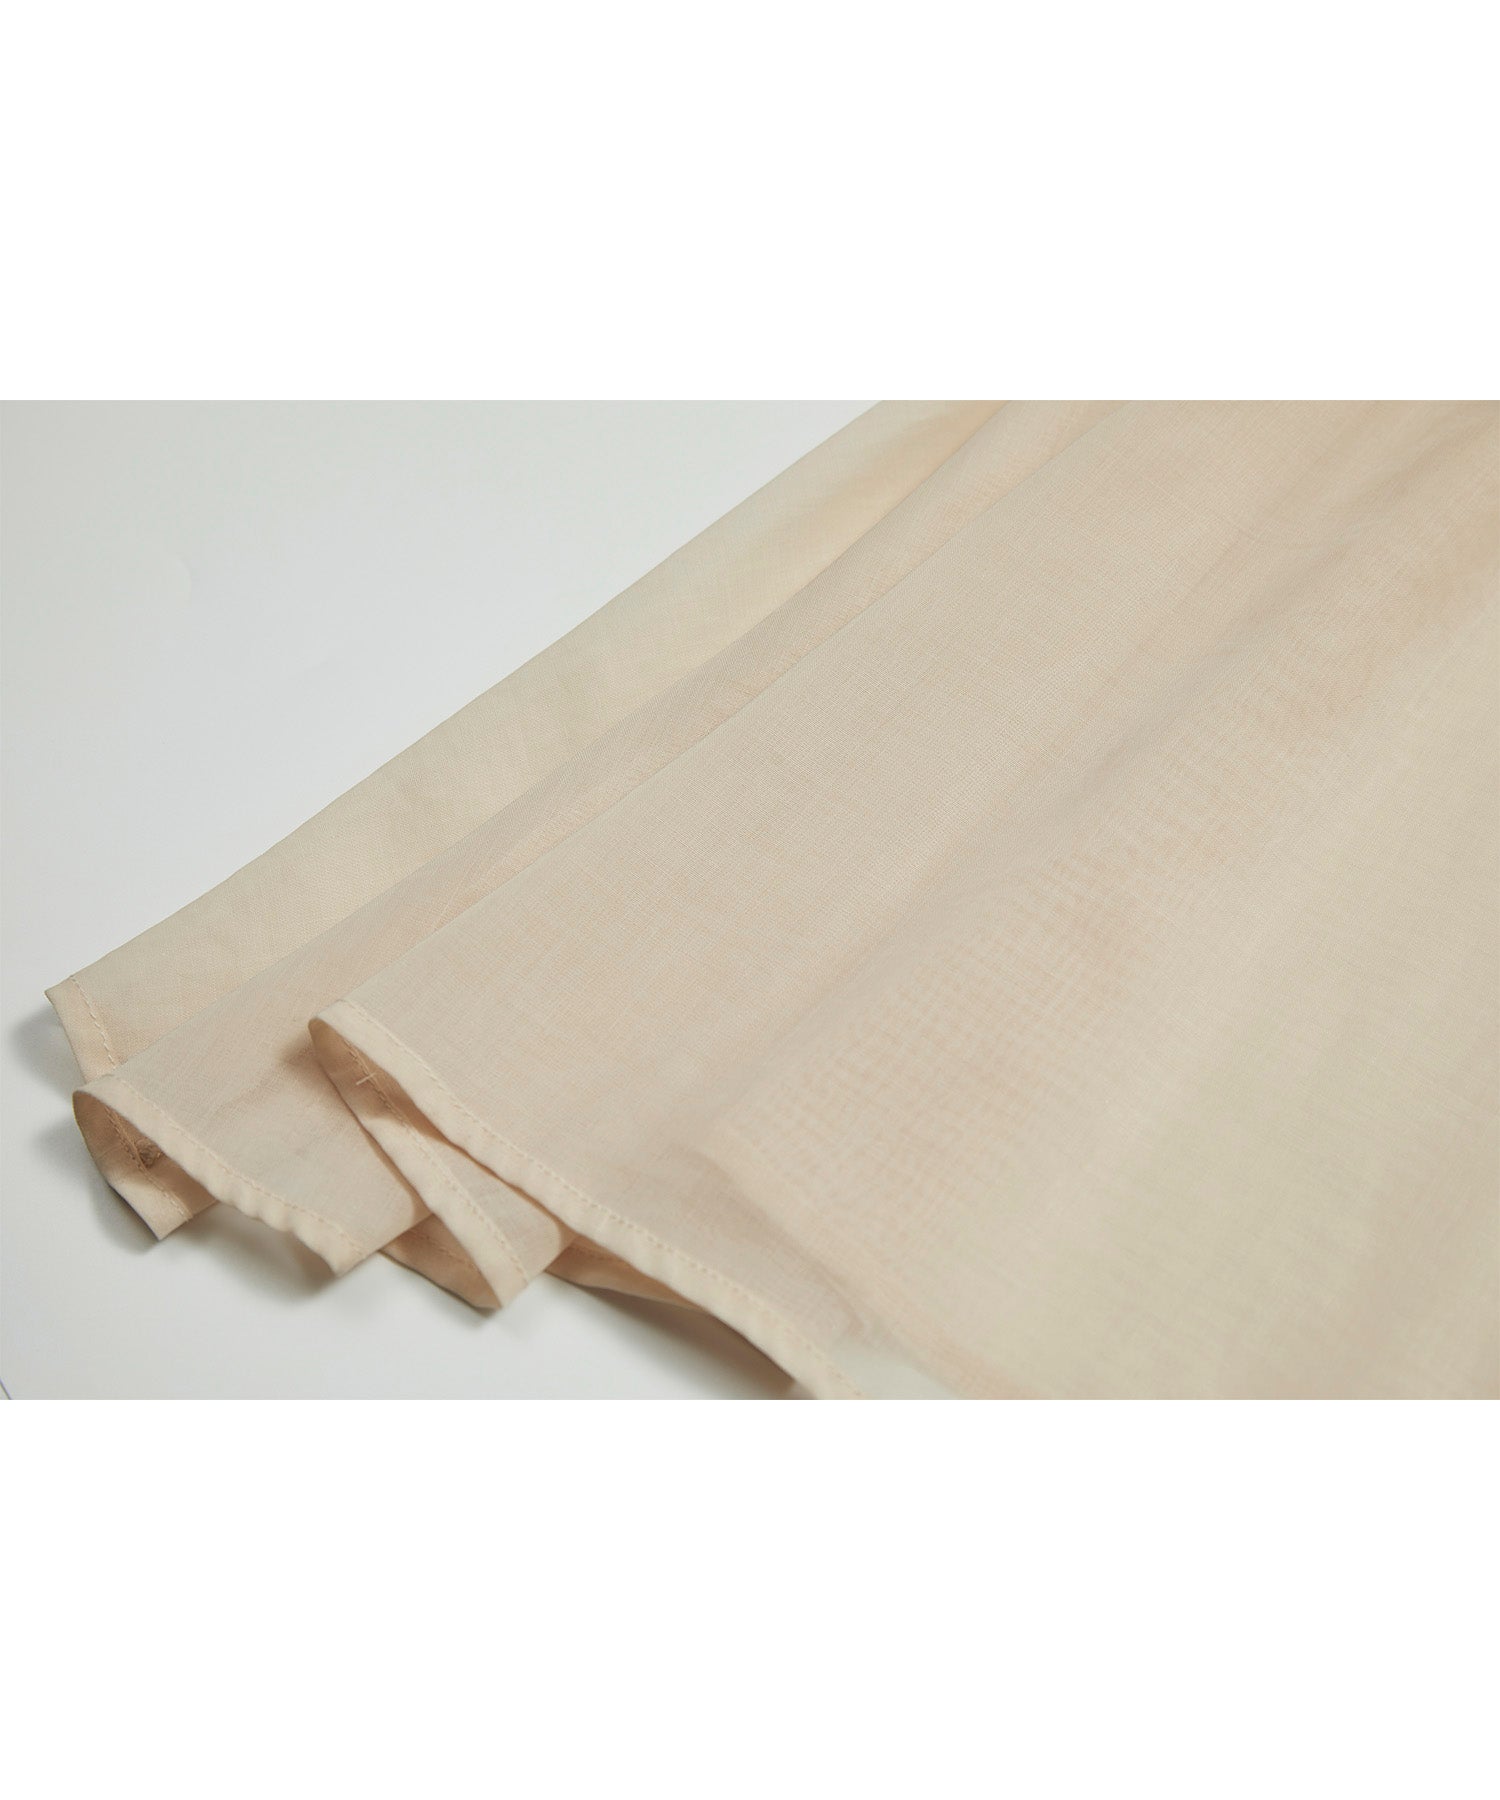 Yangliu Style Jacquard Layered Long Cami Dress 